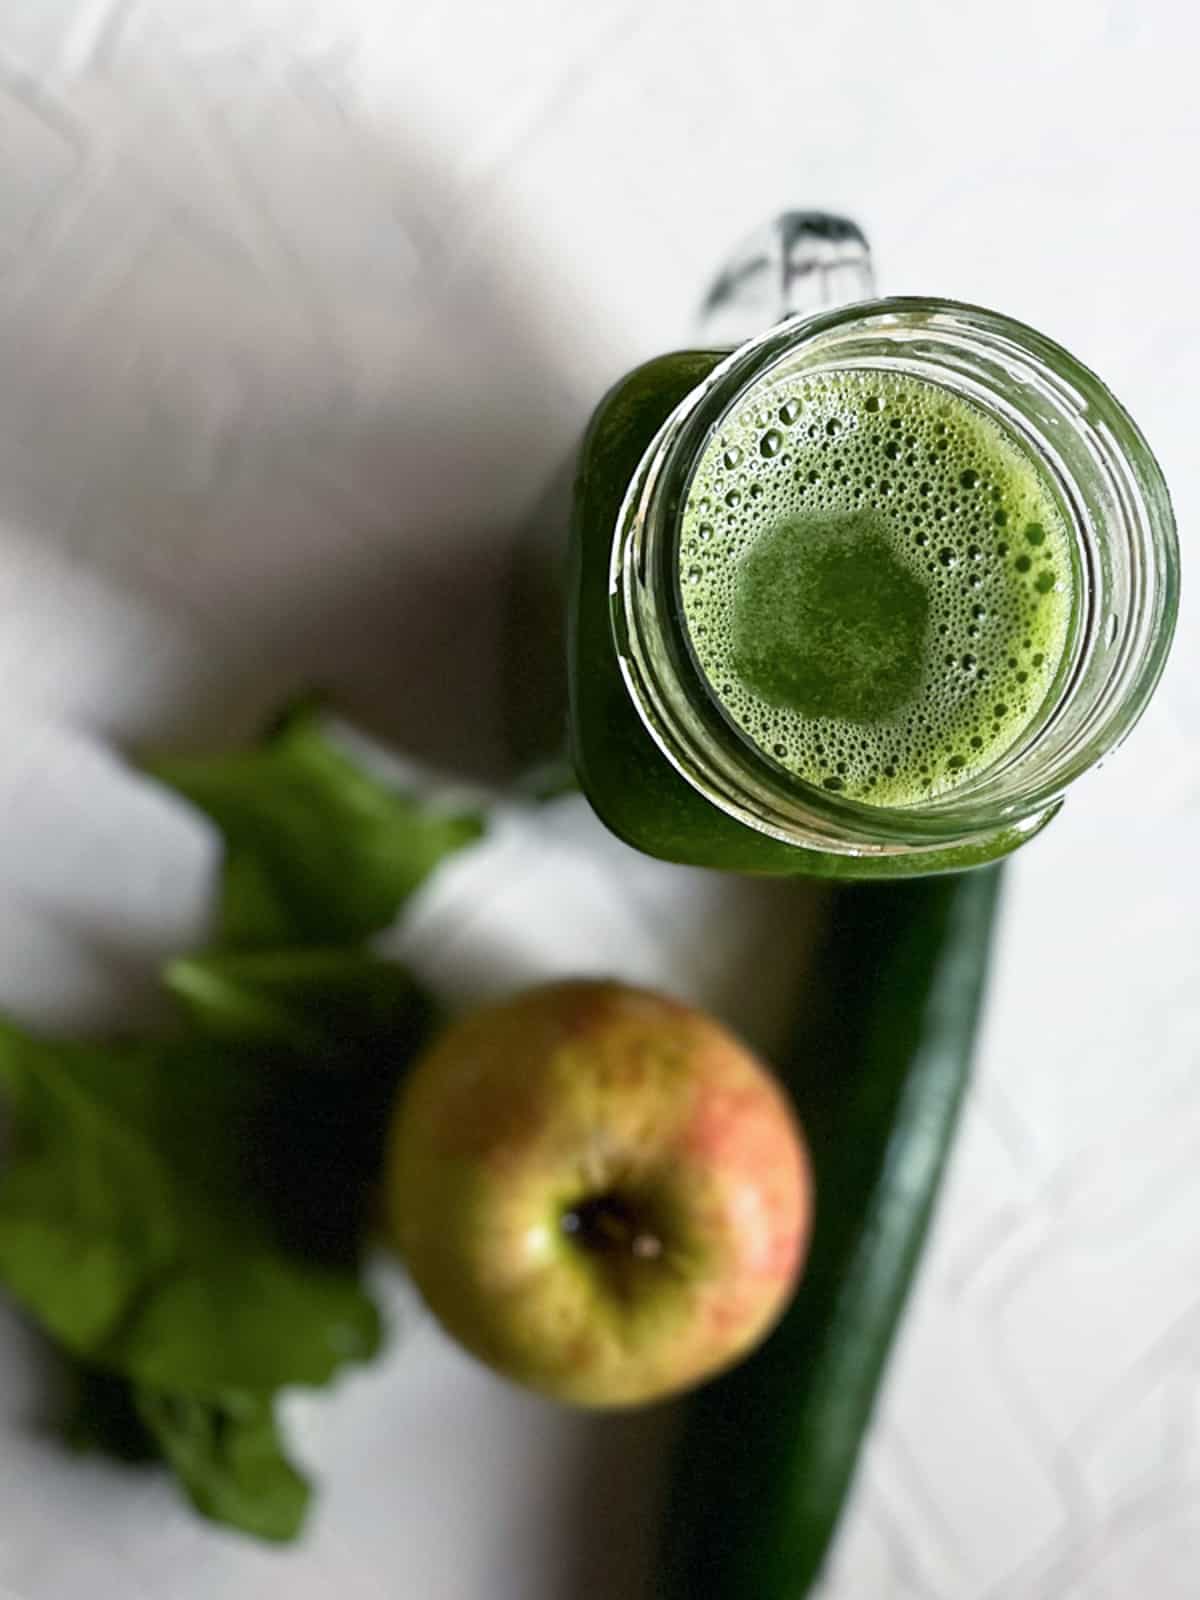 Green detox juice in a jug.